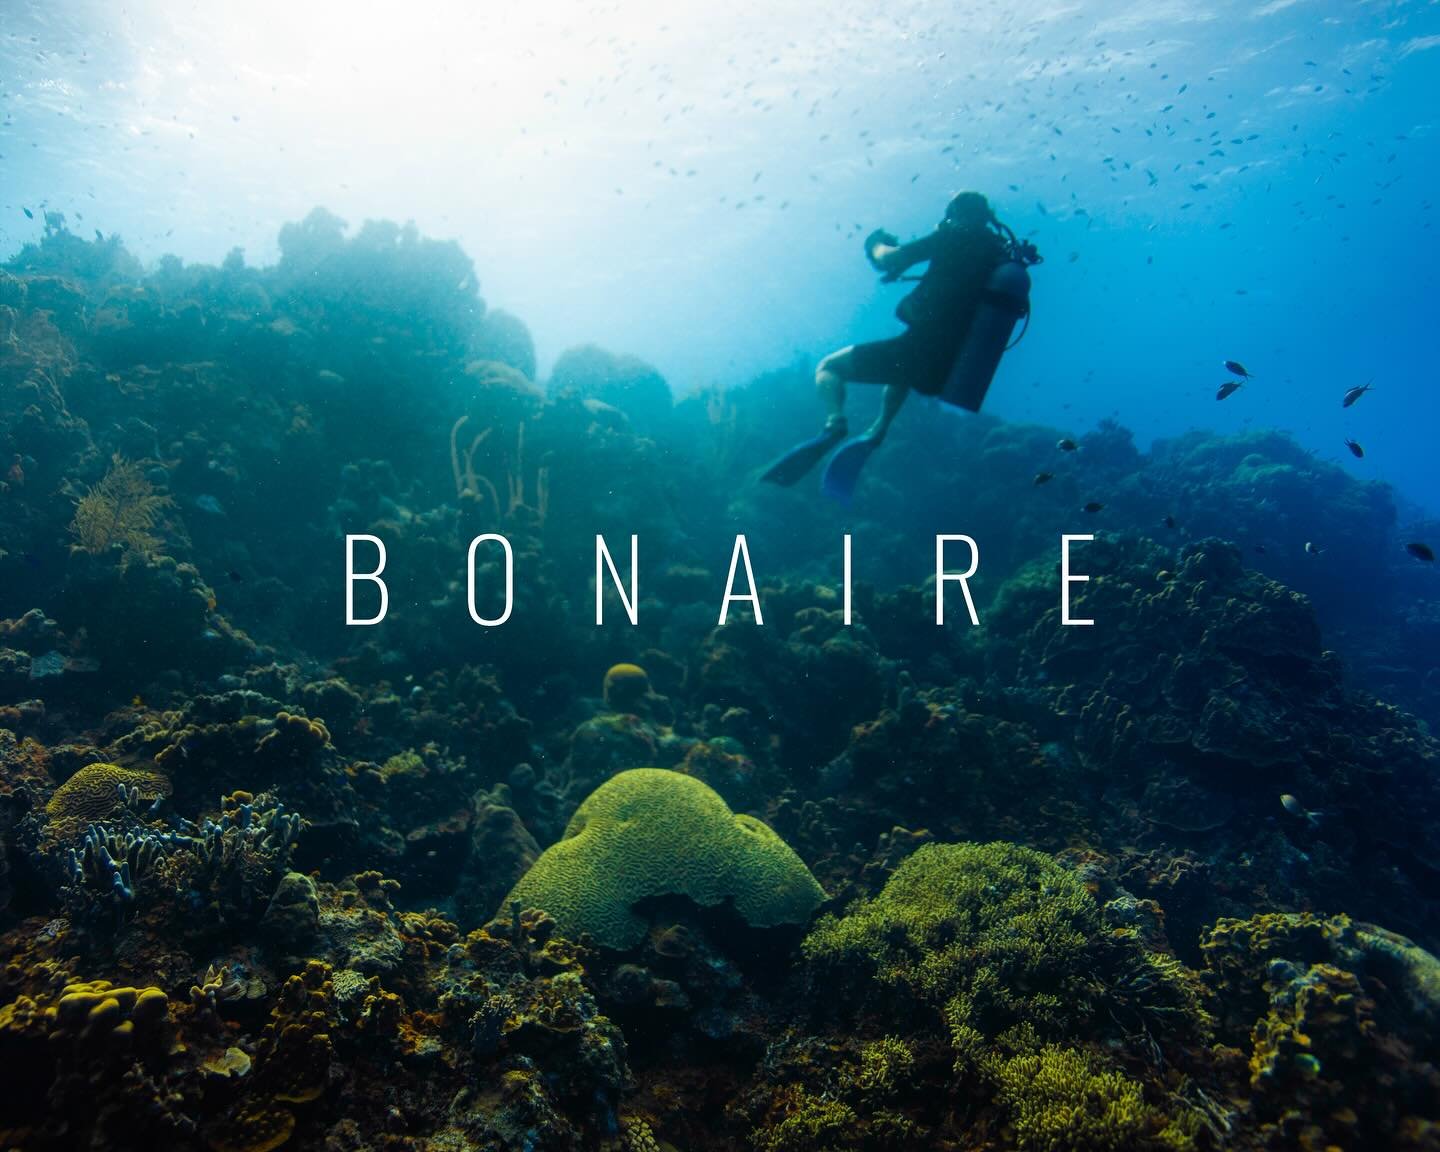 Bonaire Trip 2023
#BonaireUnderwater
#ScubaBonaire
#UnderwaterPhotography
#DiveBonaire
#BonaireDiving
#UnderwaterWorld
#MarineLifePhotography
#ScubaLife
#CoralReefBonaire
#OceanPhotography
#DiversParadise
#UnderTheSea
#ScubaDivingAddicts
#BonaireTrav